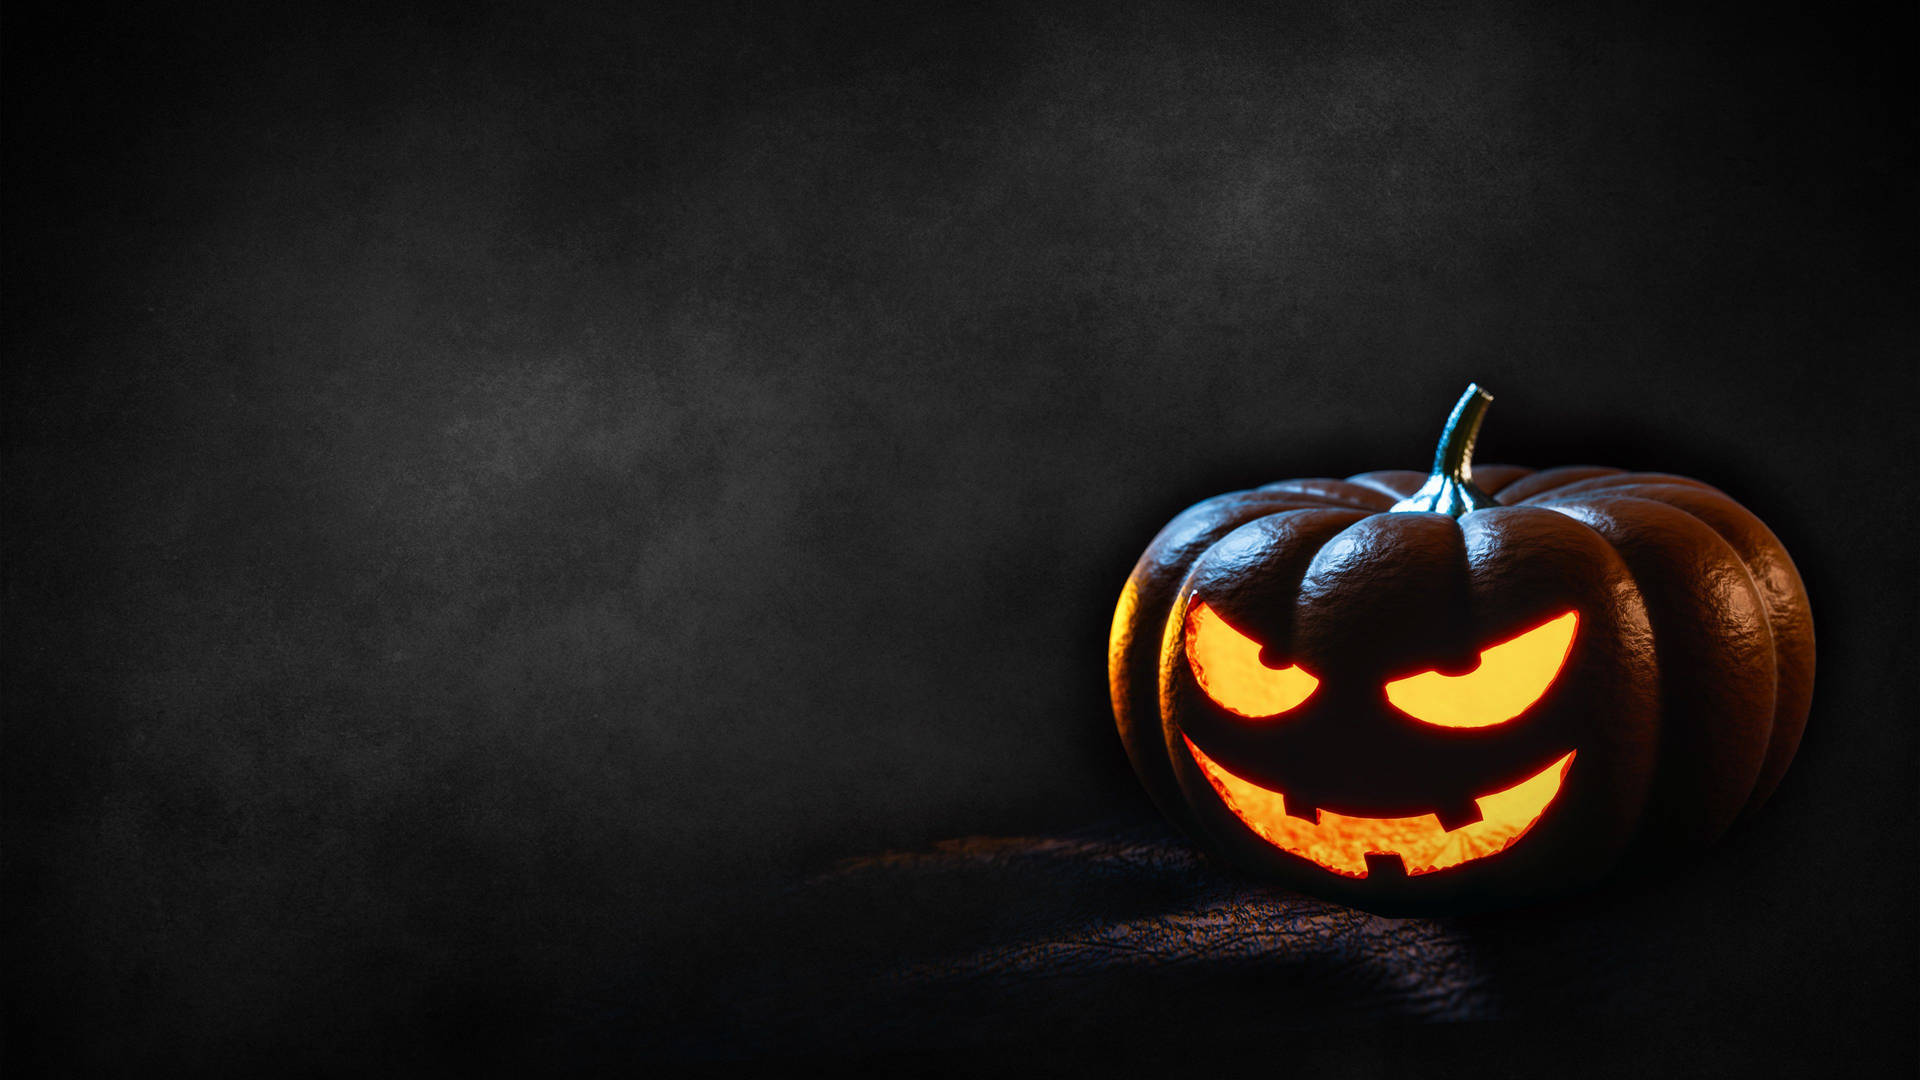 Dark Halloween Jack-o'-lantern Background